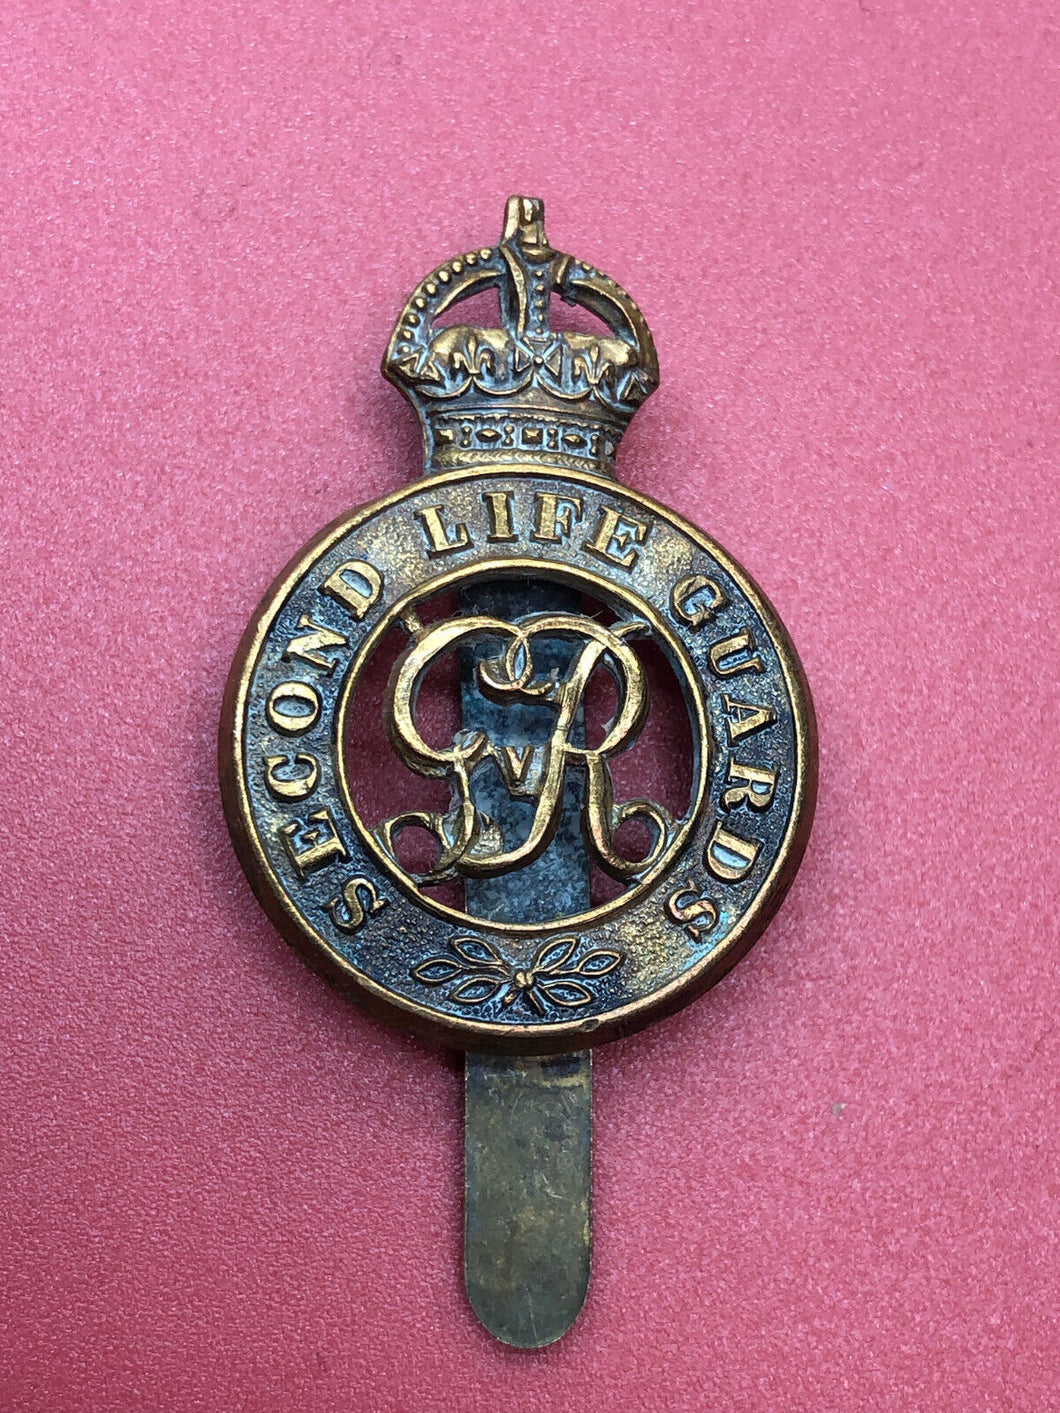 Original WW1 British Army Kings Crown Cap Badge - 2nd Life Guards